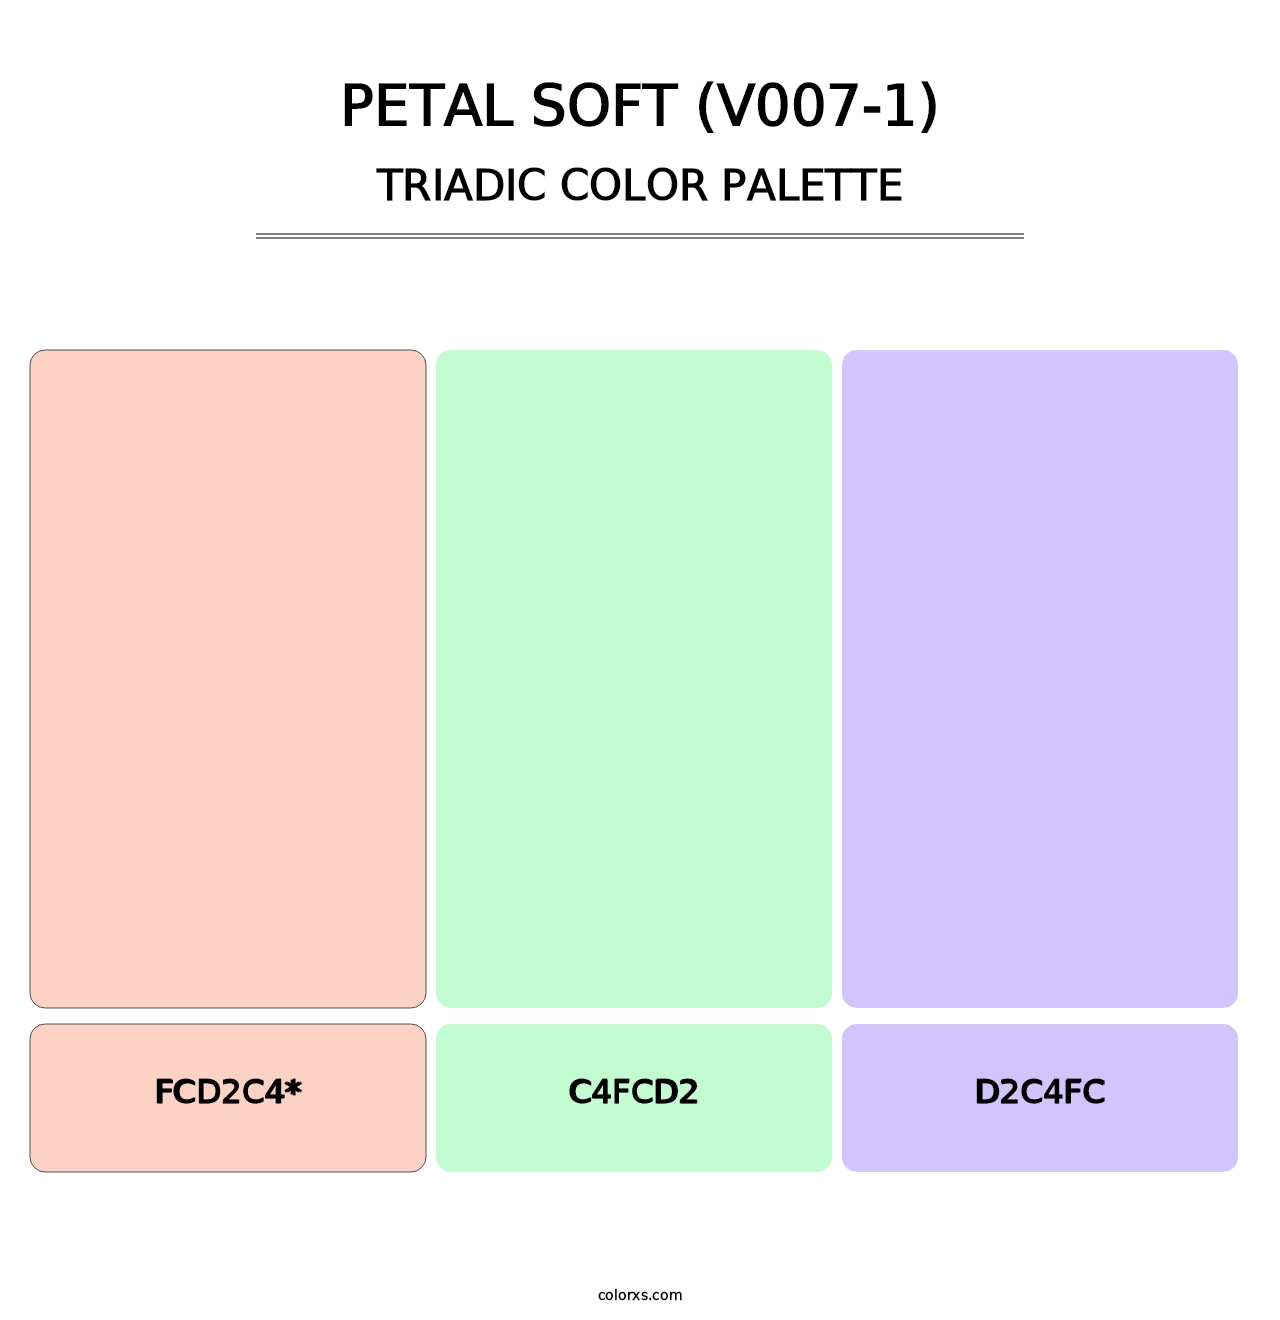 Petal Soft (V007-1) - Triadic Color Palette